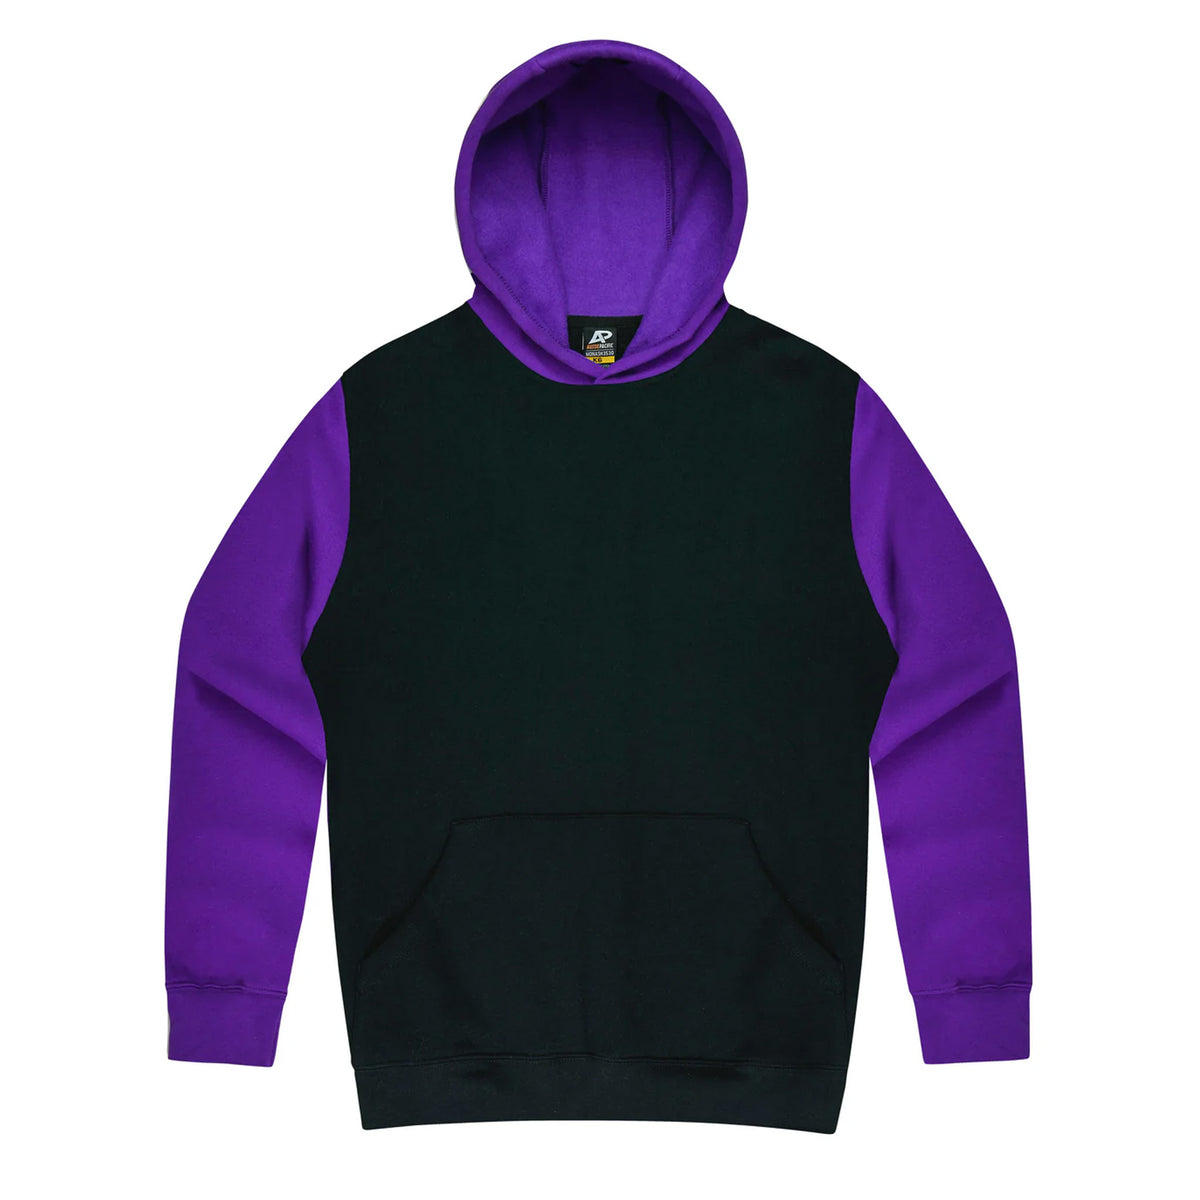 aussie pacific monash kids hoodie in black purple